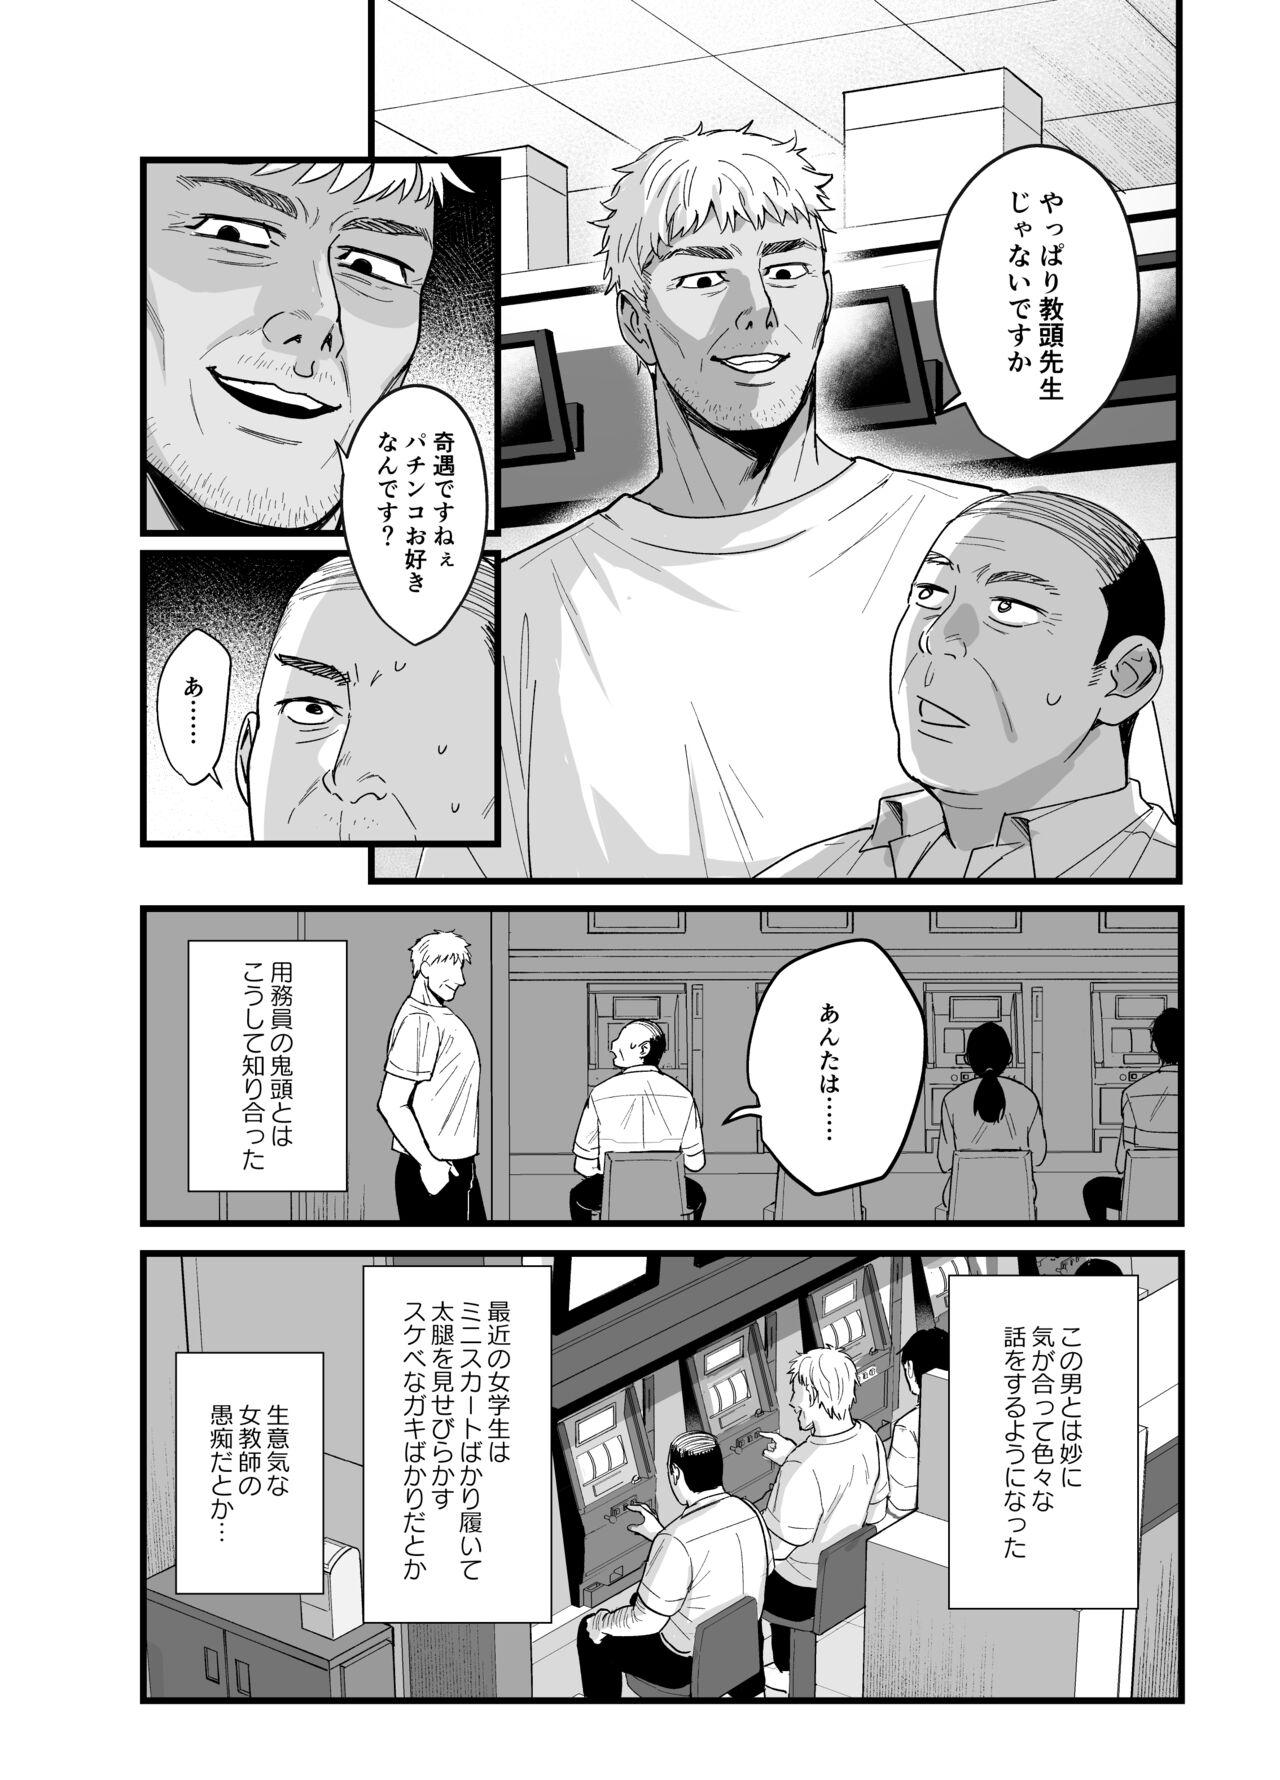 Perverted Toshoshitsu no Kanojo 6 - Original Sluts - Page 3